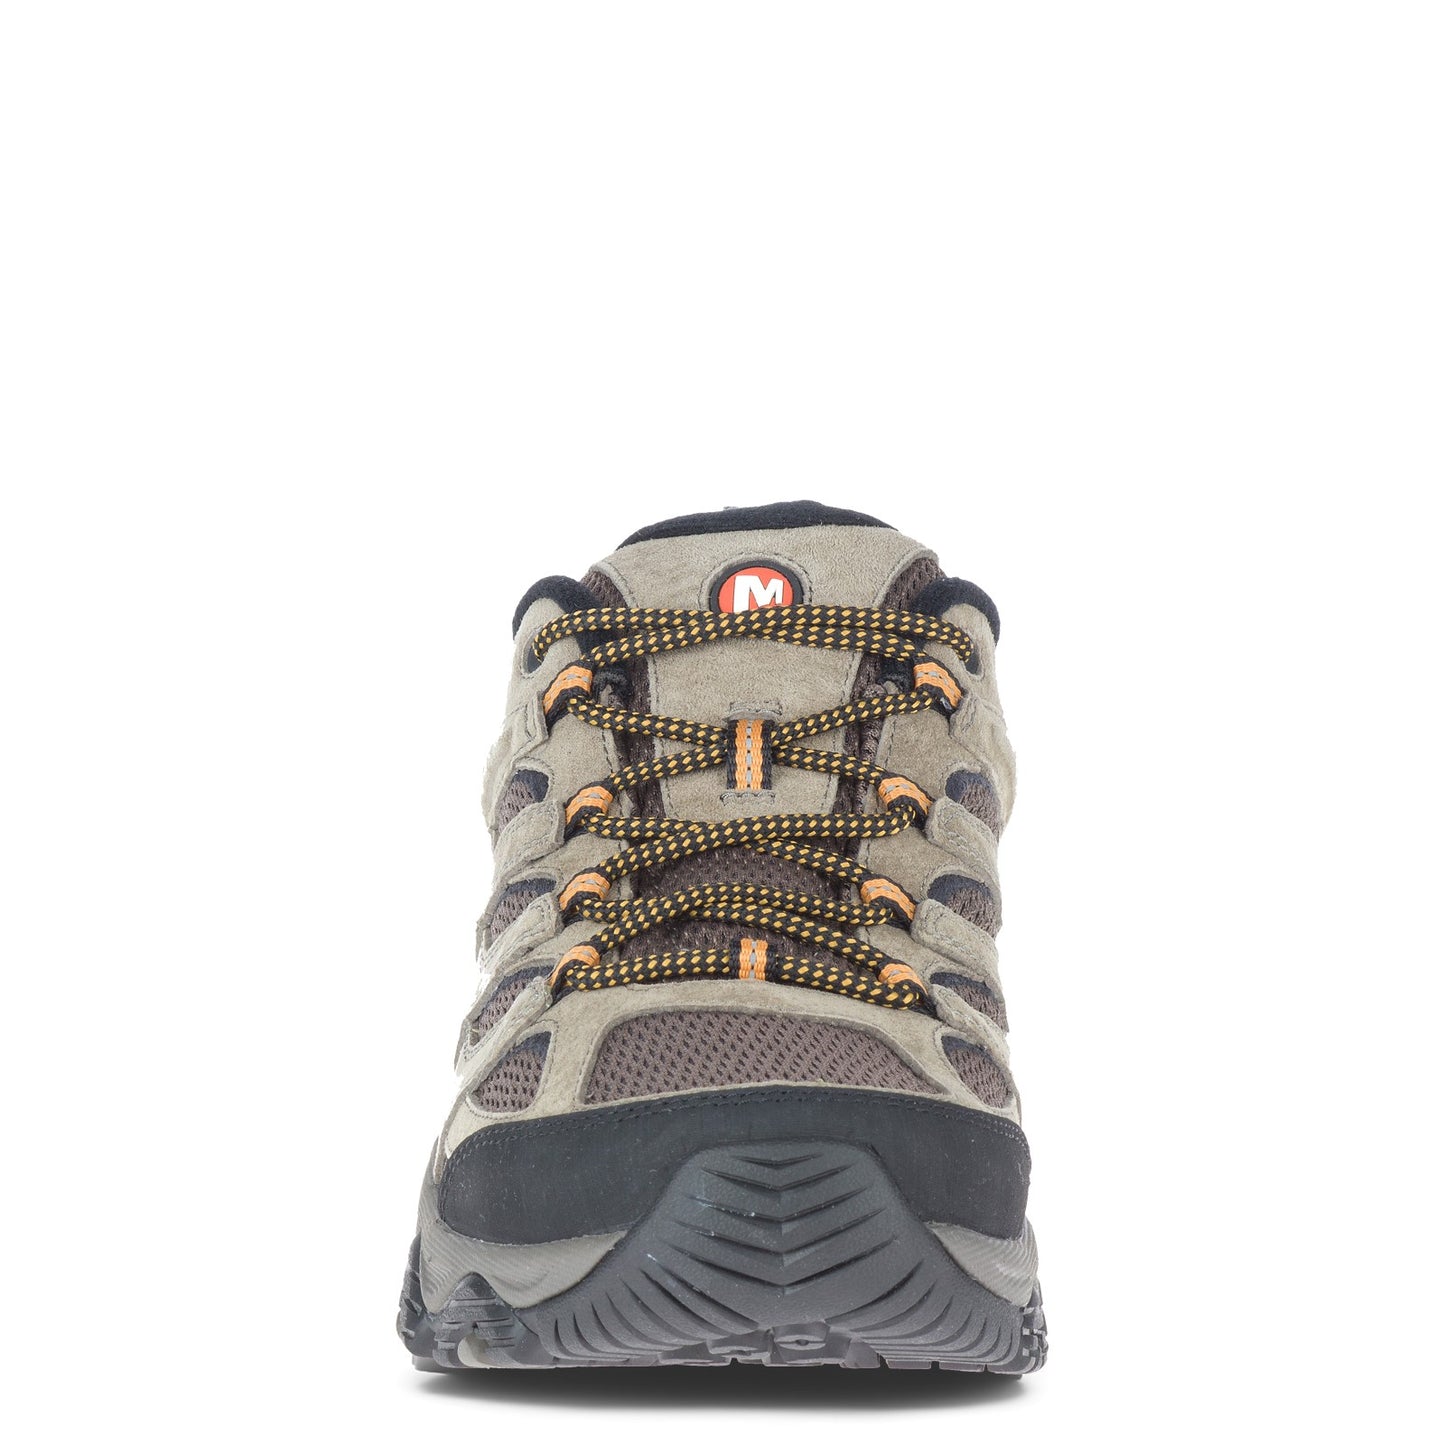 Peltz Shoes  Men's Merrell Moab 3 Hiking Shoe - Wide Width WALNUT J035893W